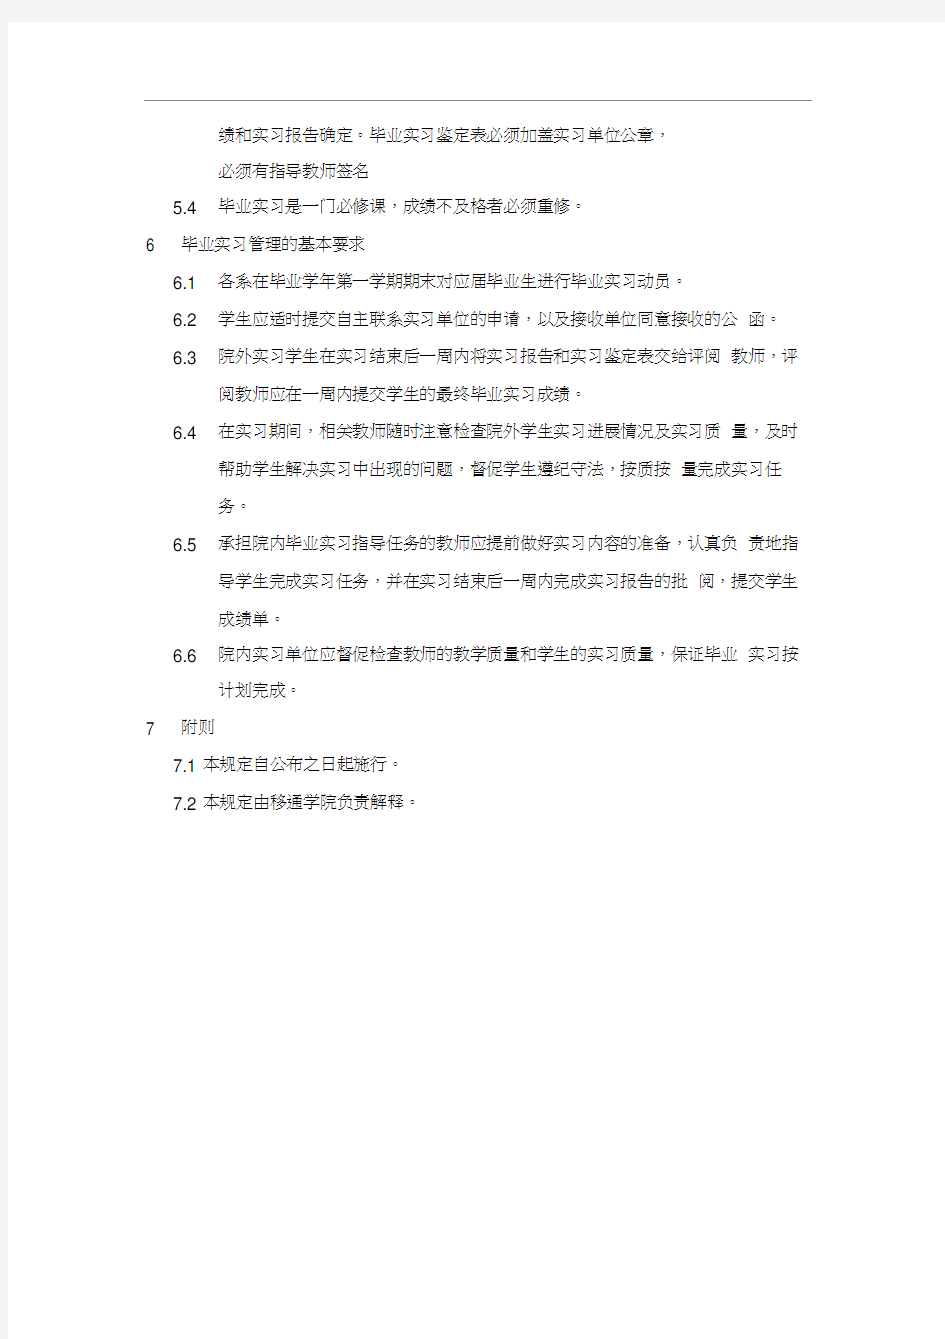 重庆邮电大学移通学院实习报告(20201101112842)